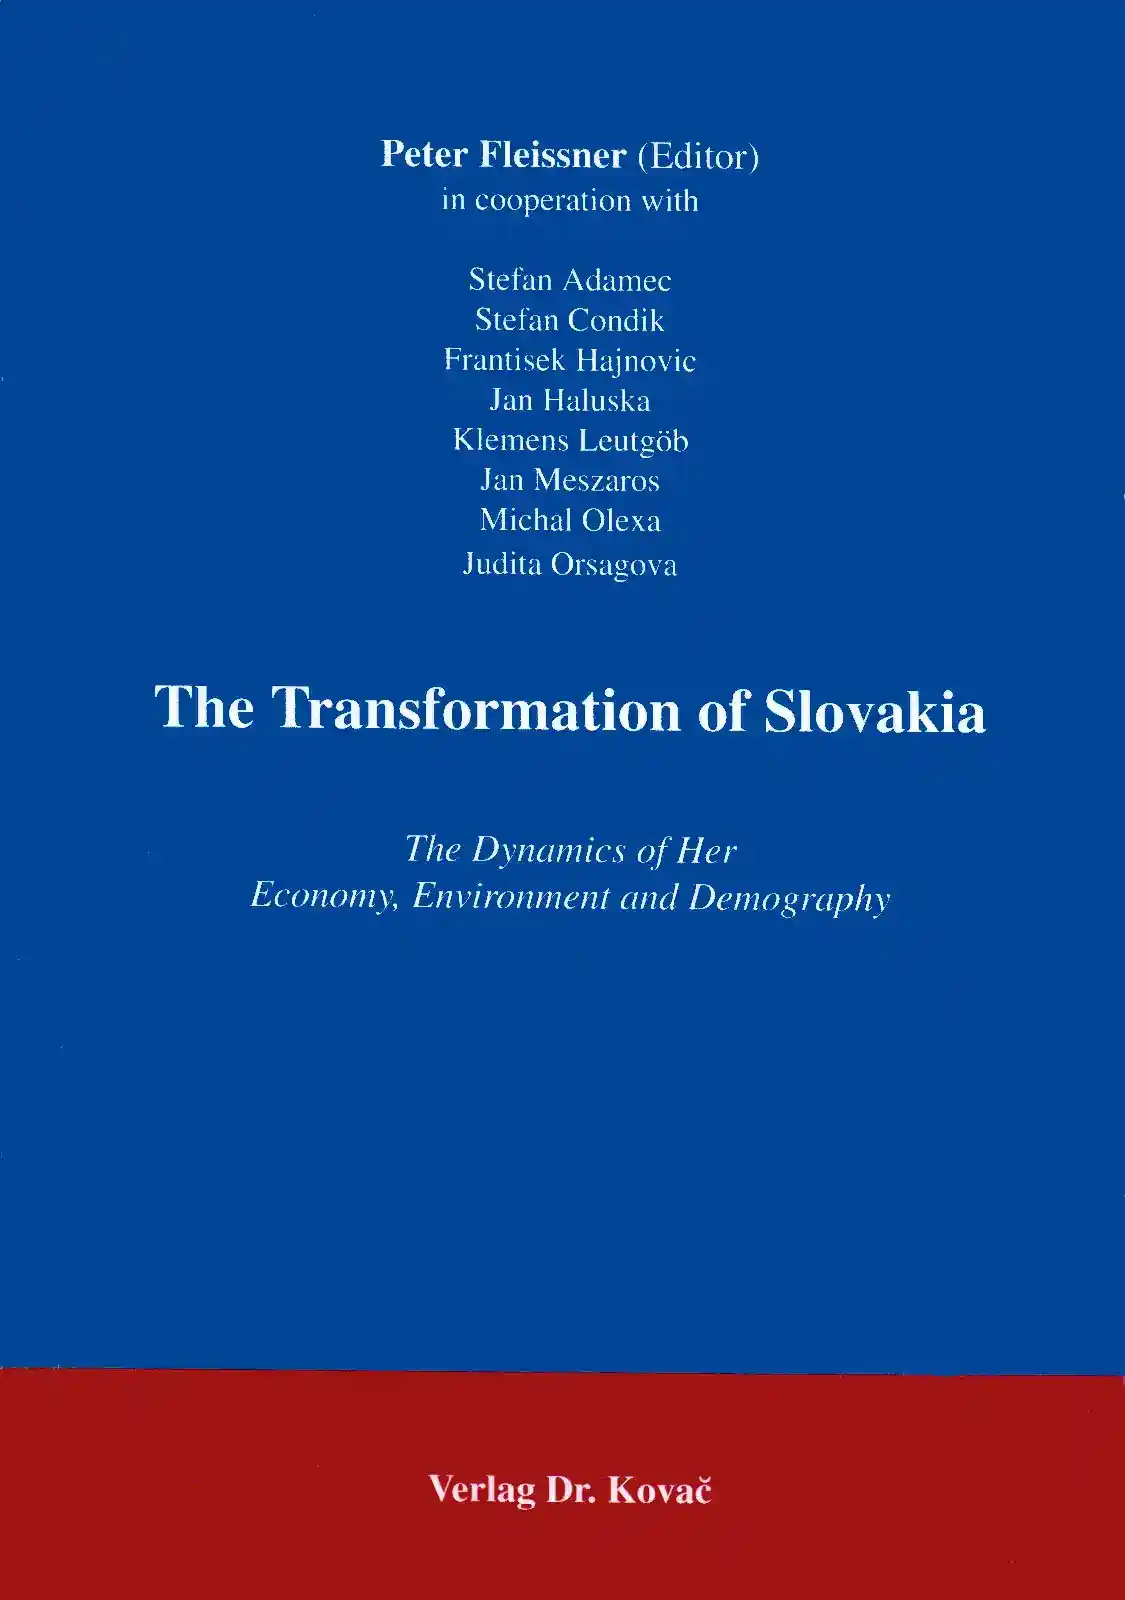 The Transformation of Slovakia (Forschungsarbeit)